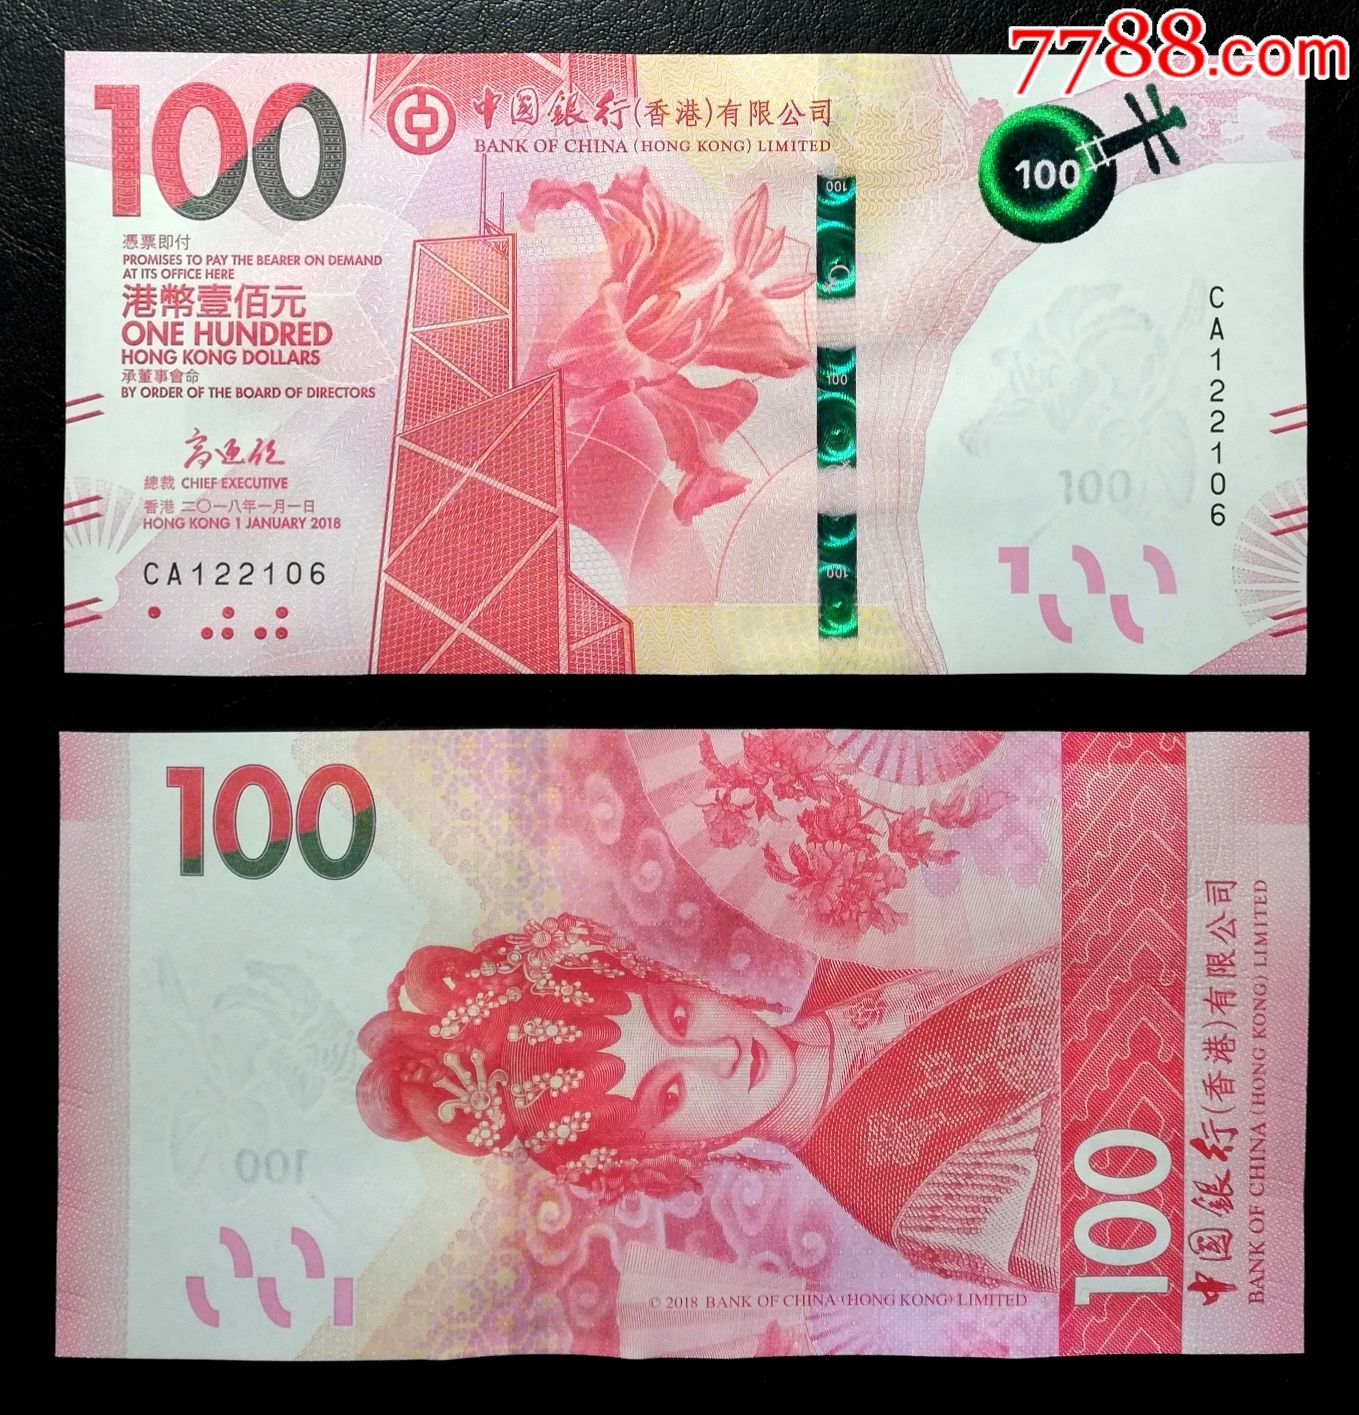 香港金融管理局 - 香港纸币的历史和演变